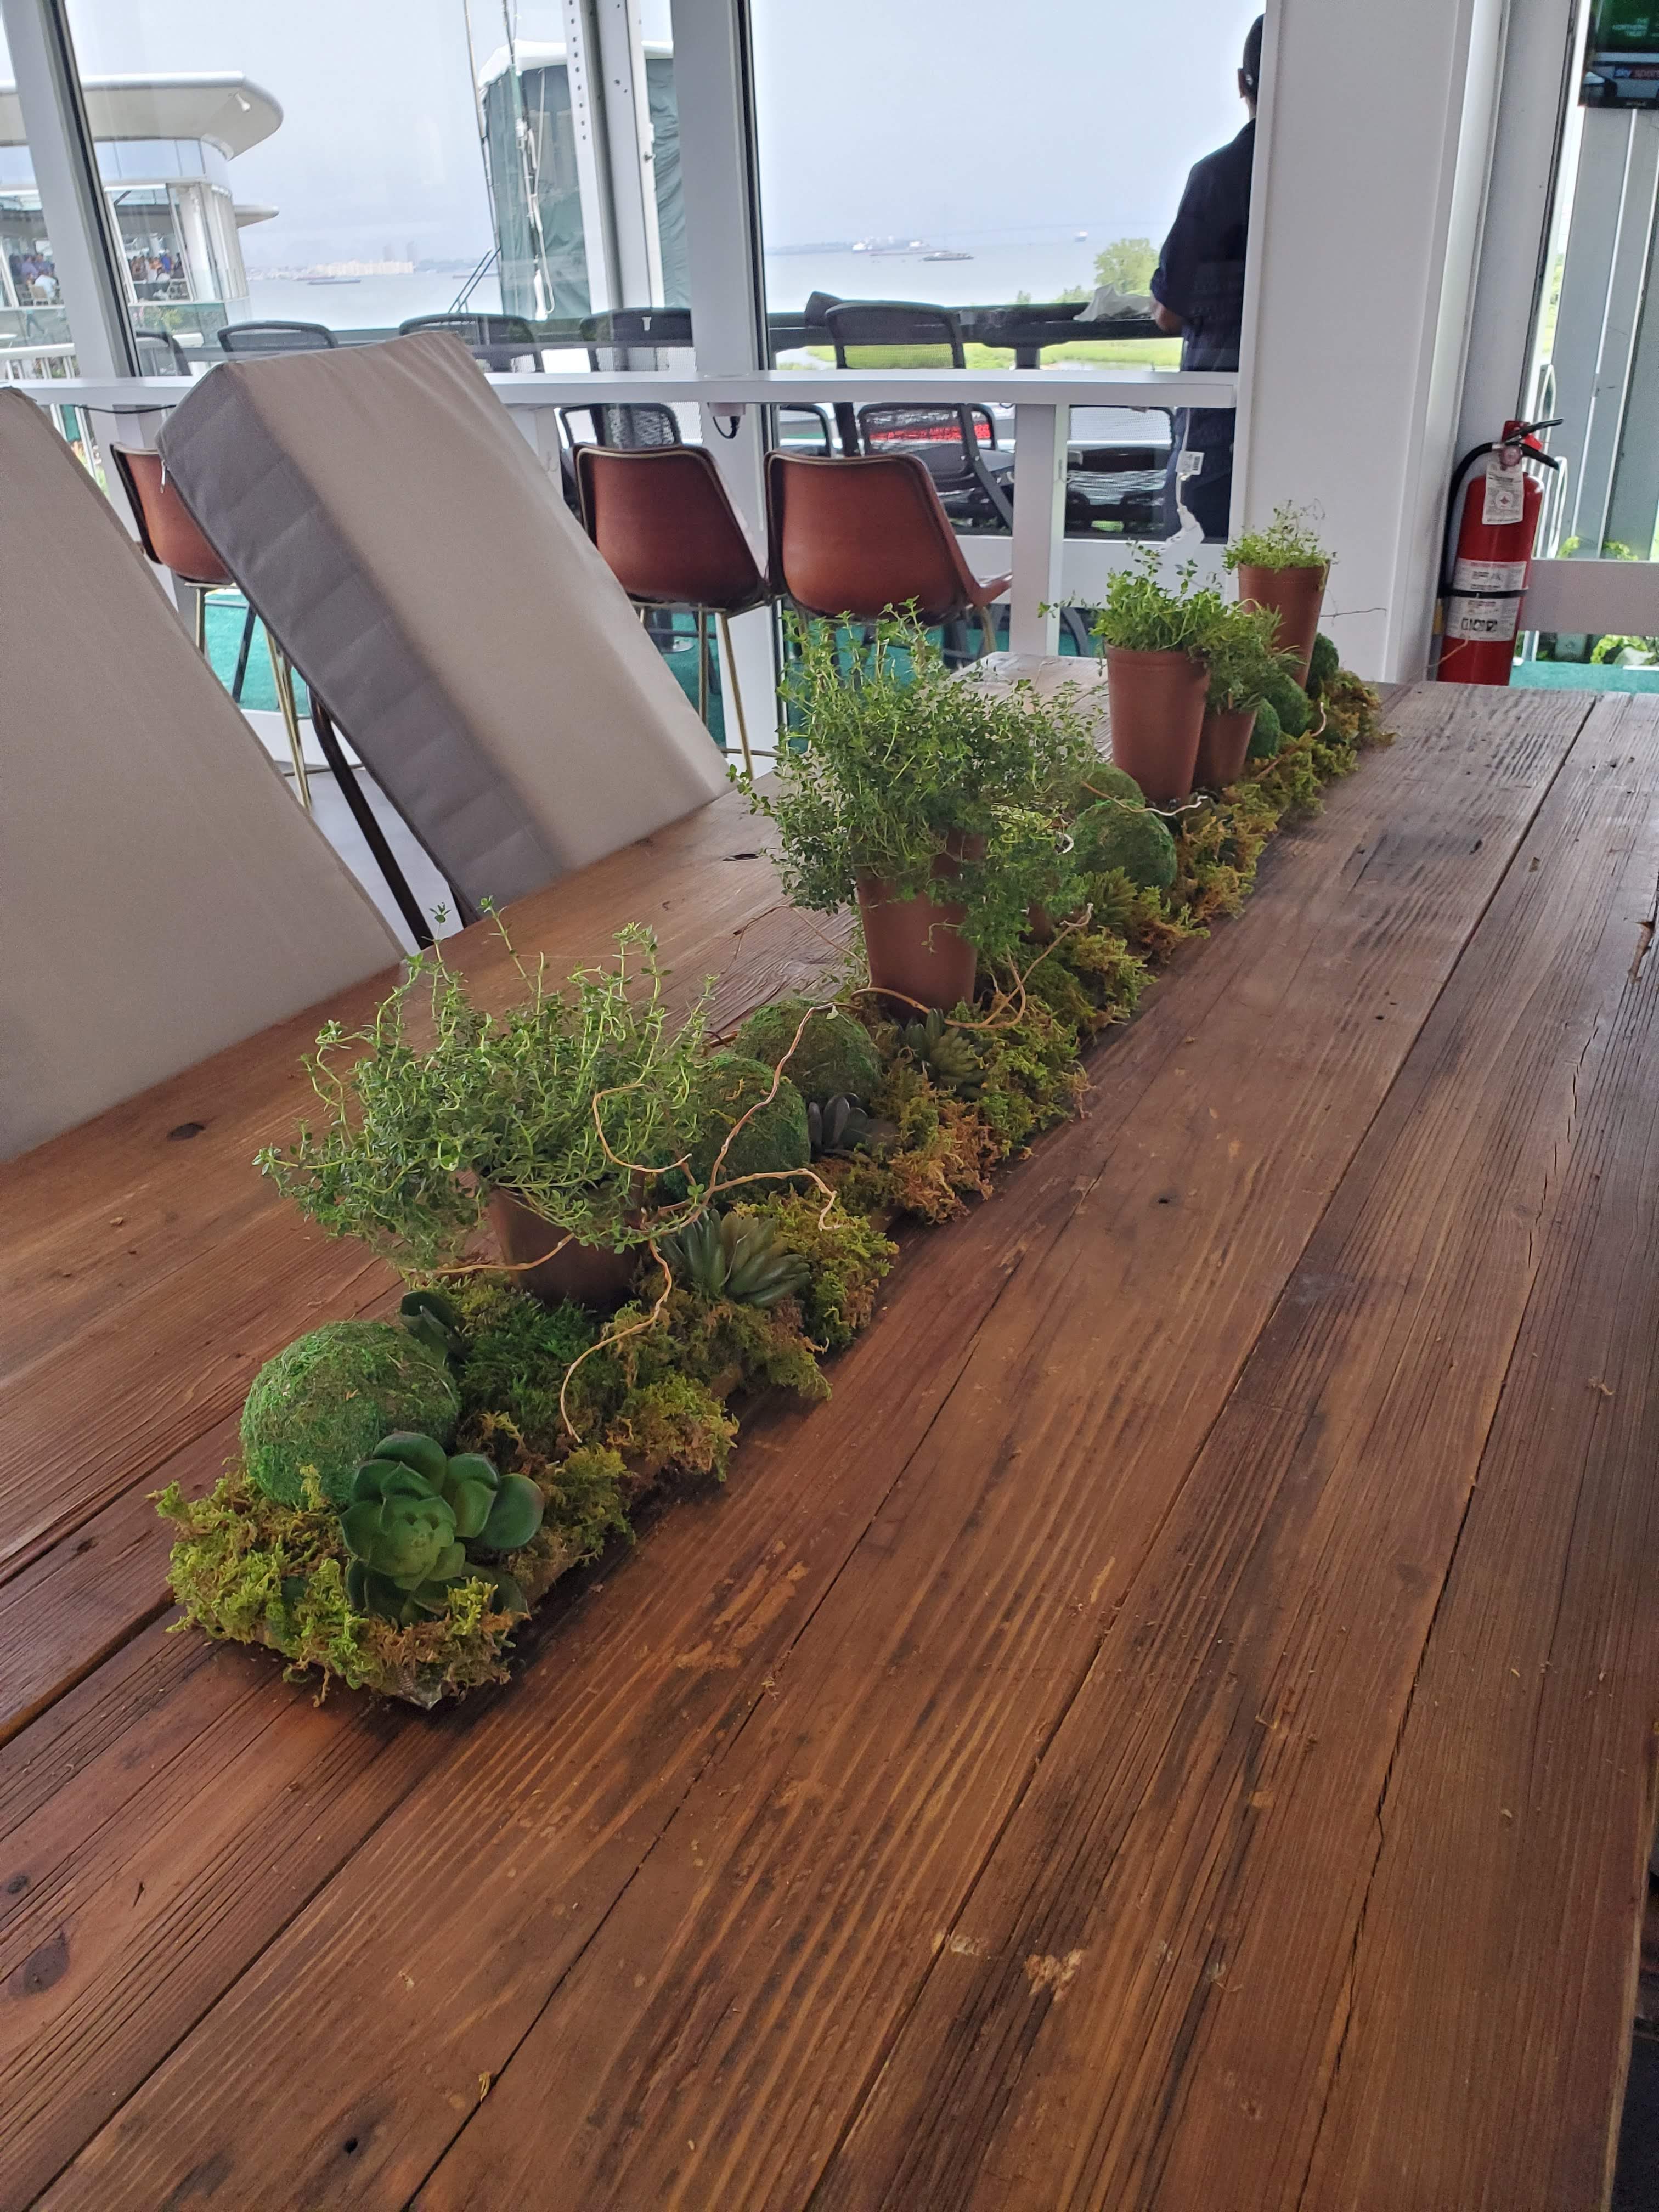 Green plant table runner